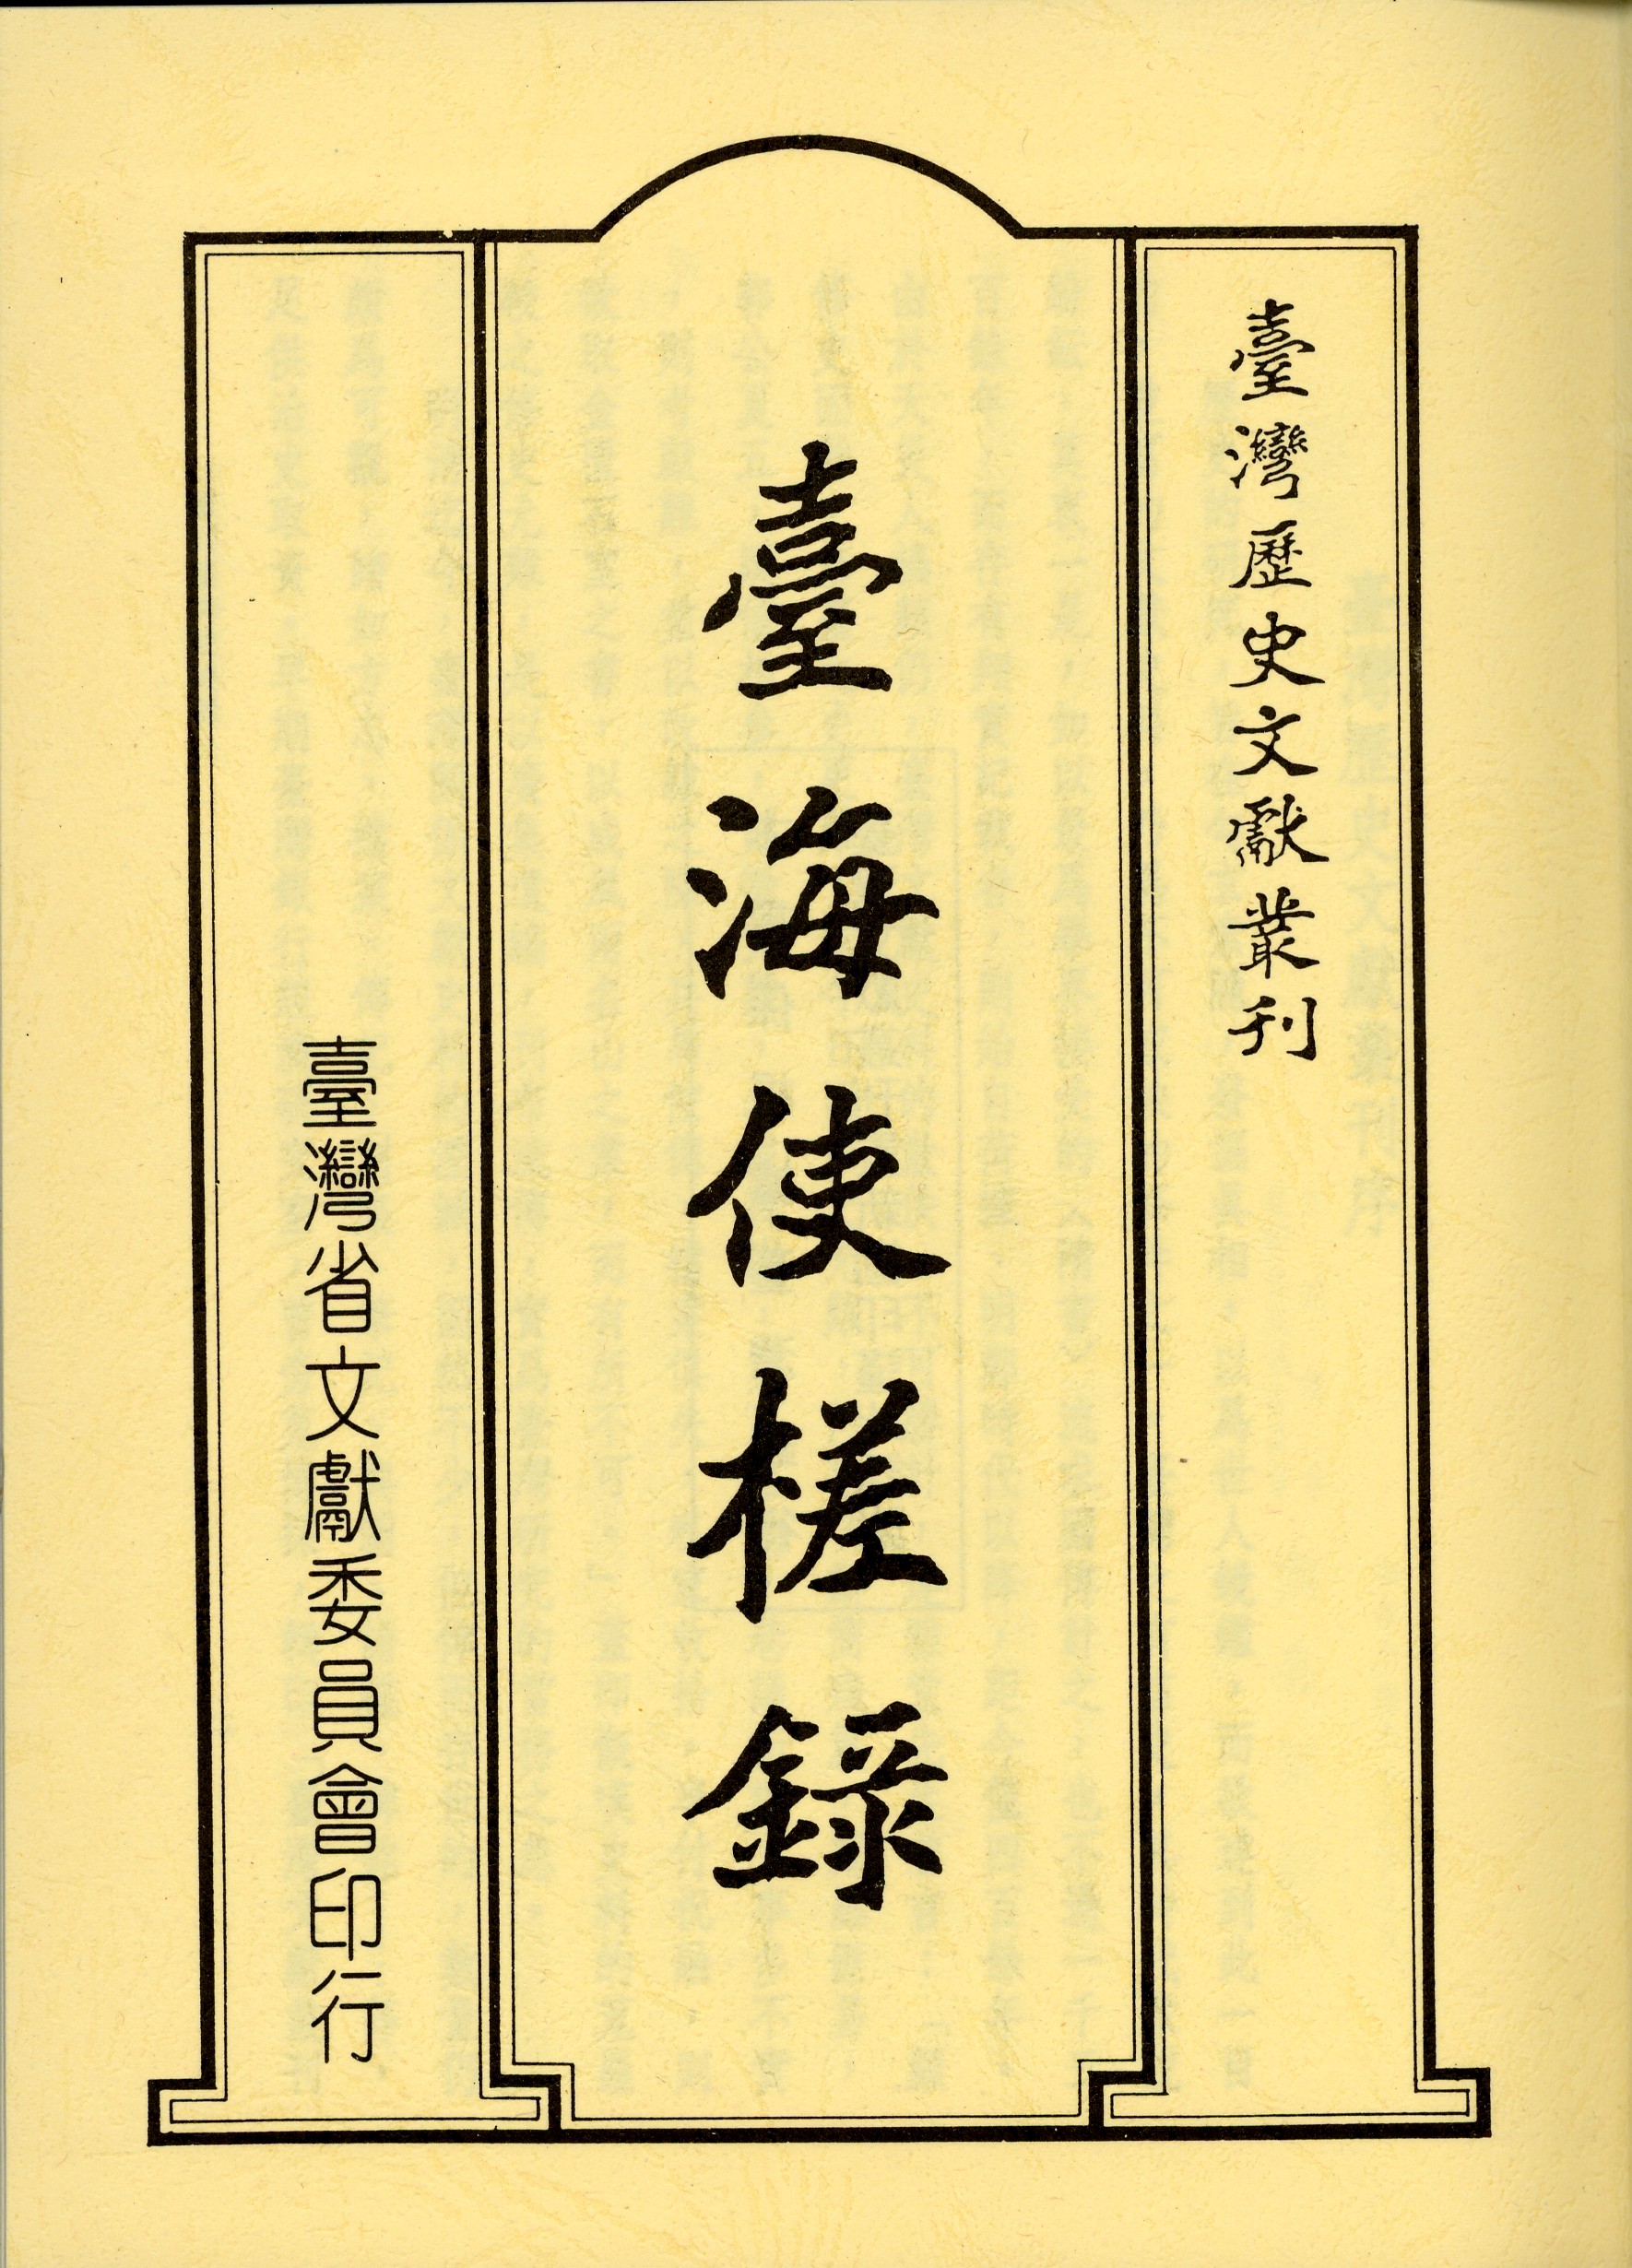 臺海使槎錄 (Classical Chinese language, 臺灣省文獻委員會)